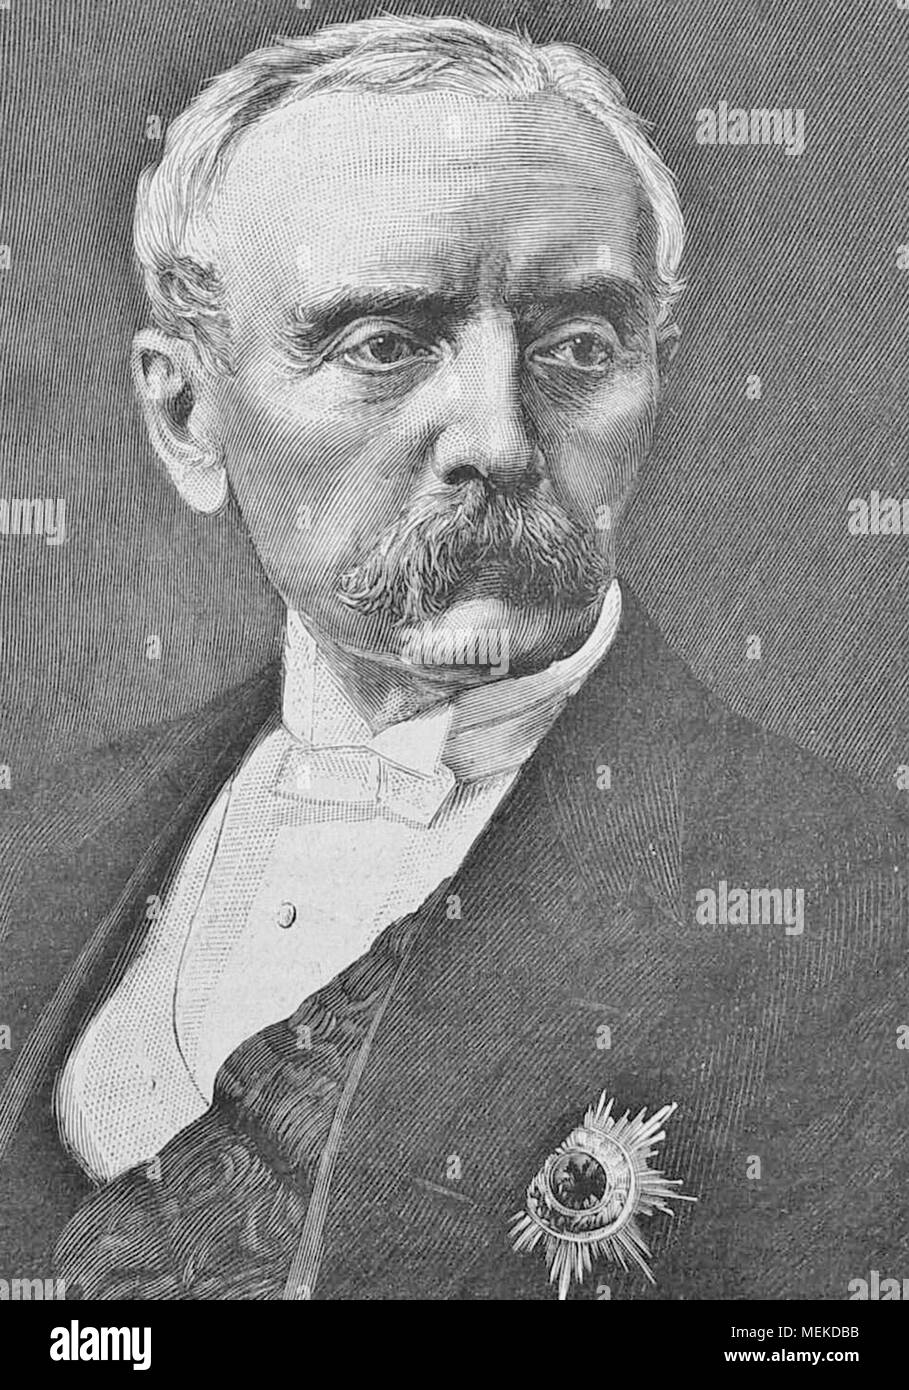 Chlodwig Carl Viktor, principe di Hohenlohe-Schilingsfürst, principe di Ratibor e Corvey (1819 - 1901), il principe di Hohenlohe, statista tedesco, che ha servito come cancelliere della Germania e primo ministro della Prussia dal 1894 al 1900. Foto Stock